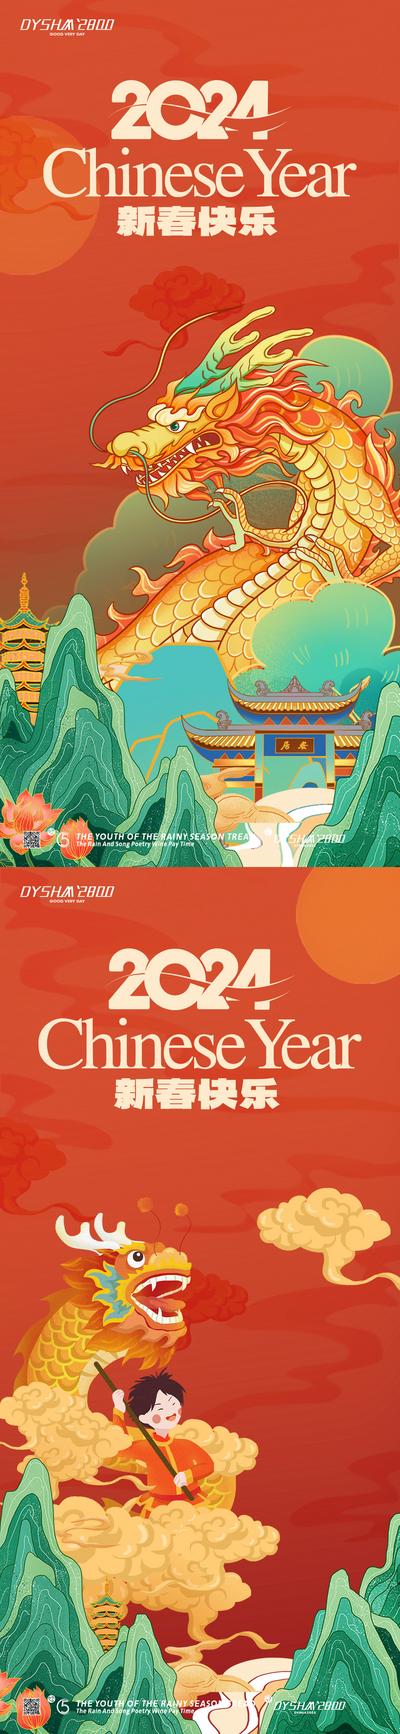 【南门网】广告 海报 新年 元旦 春节 龙 2024 龙年 系列 节日